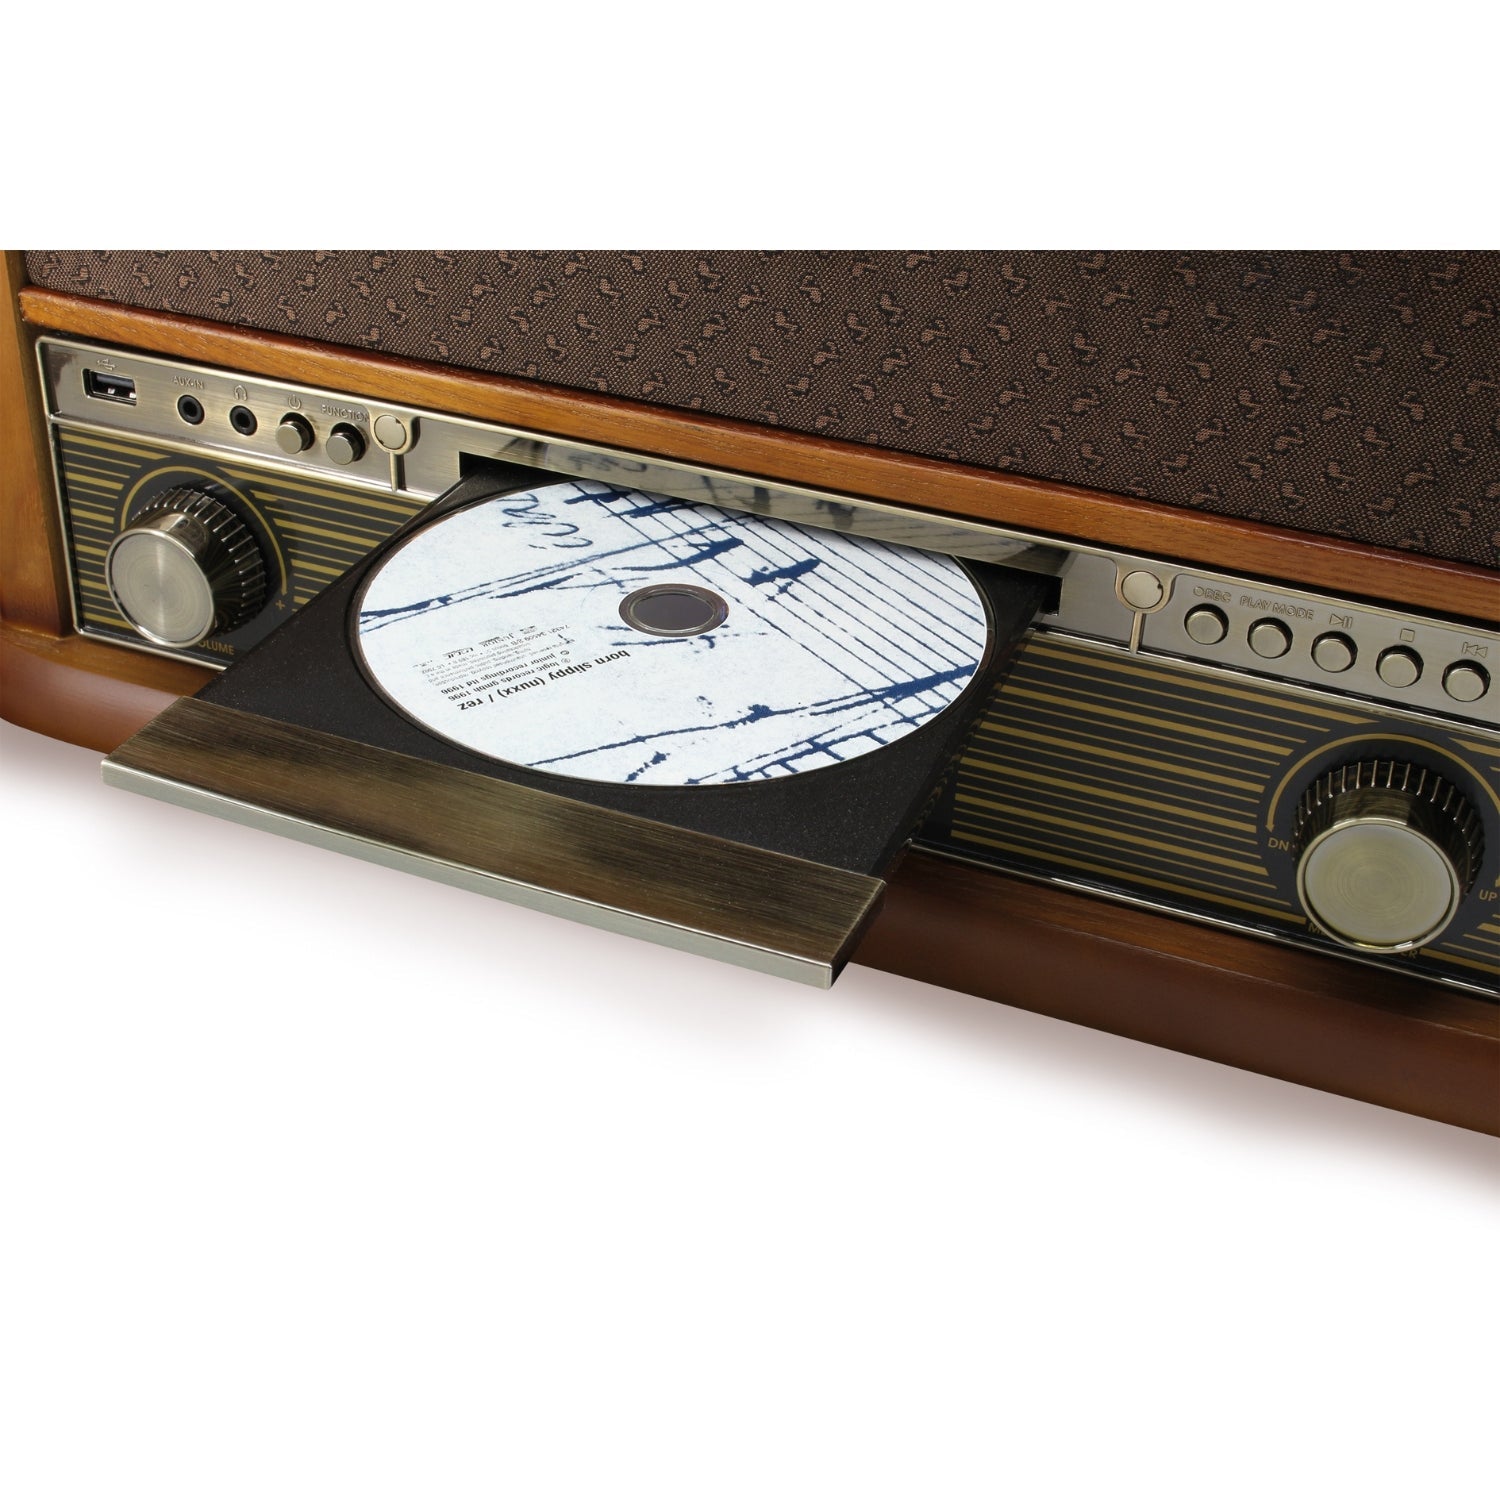 Soundmaster NR560 SET mit Untergestell SF510 Nostalgie Stereoanlage Kompaktanlage Plattenspieler CD-Player MP3 USB Encoding Kassettenspieler 75-Ohm Anschluss